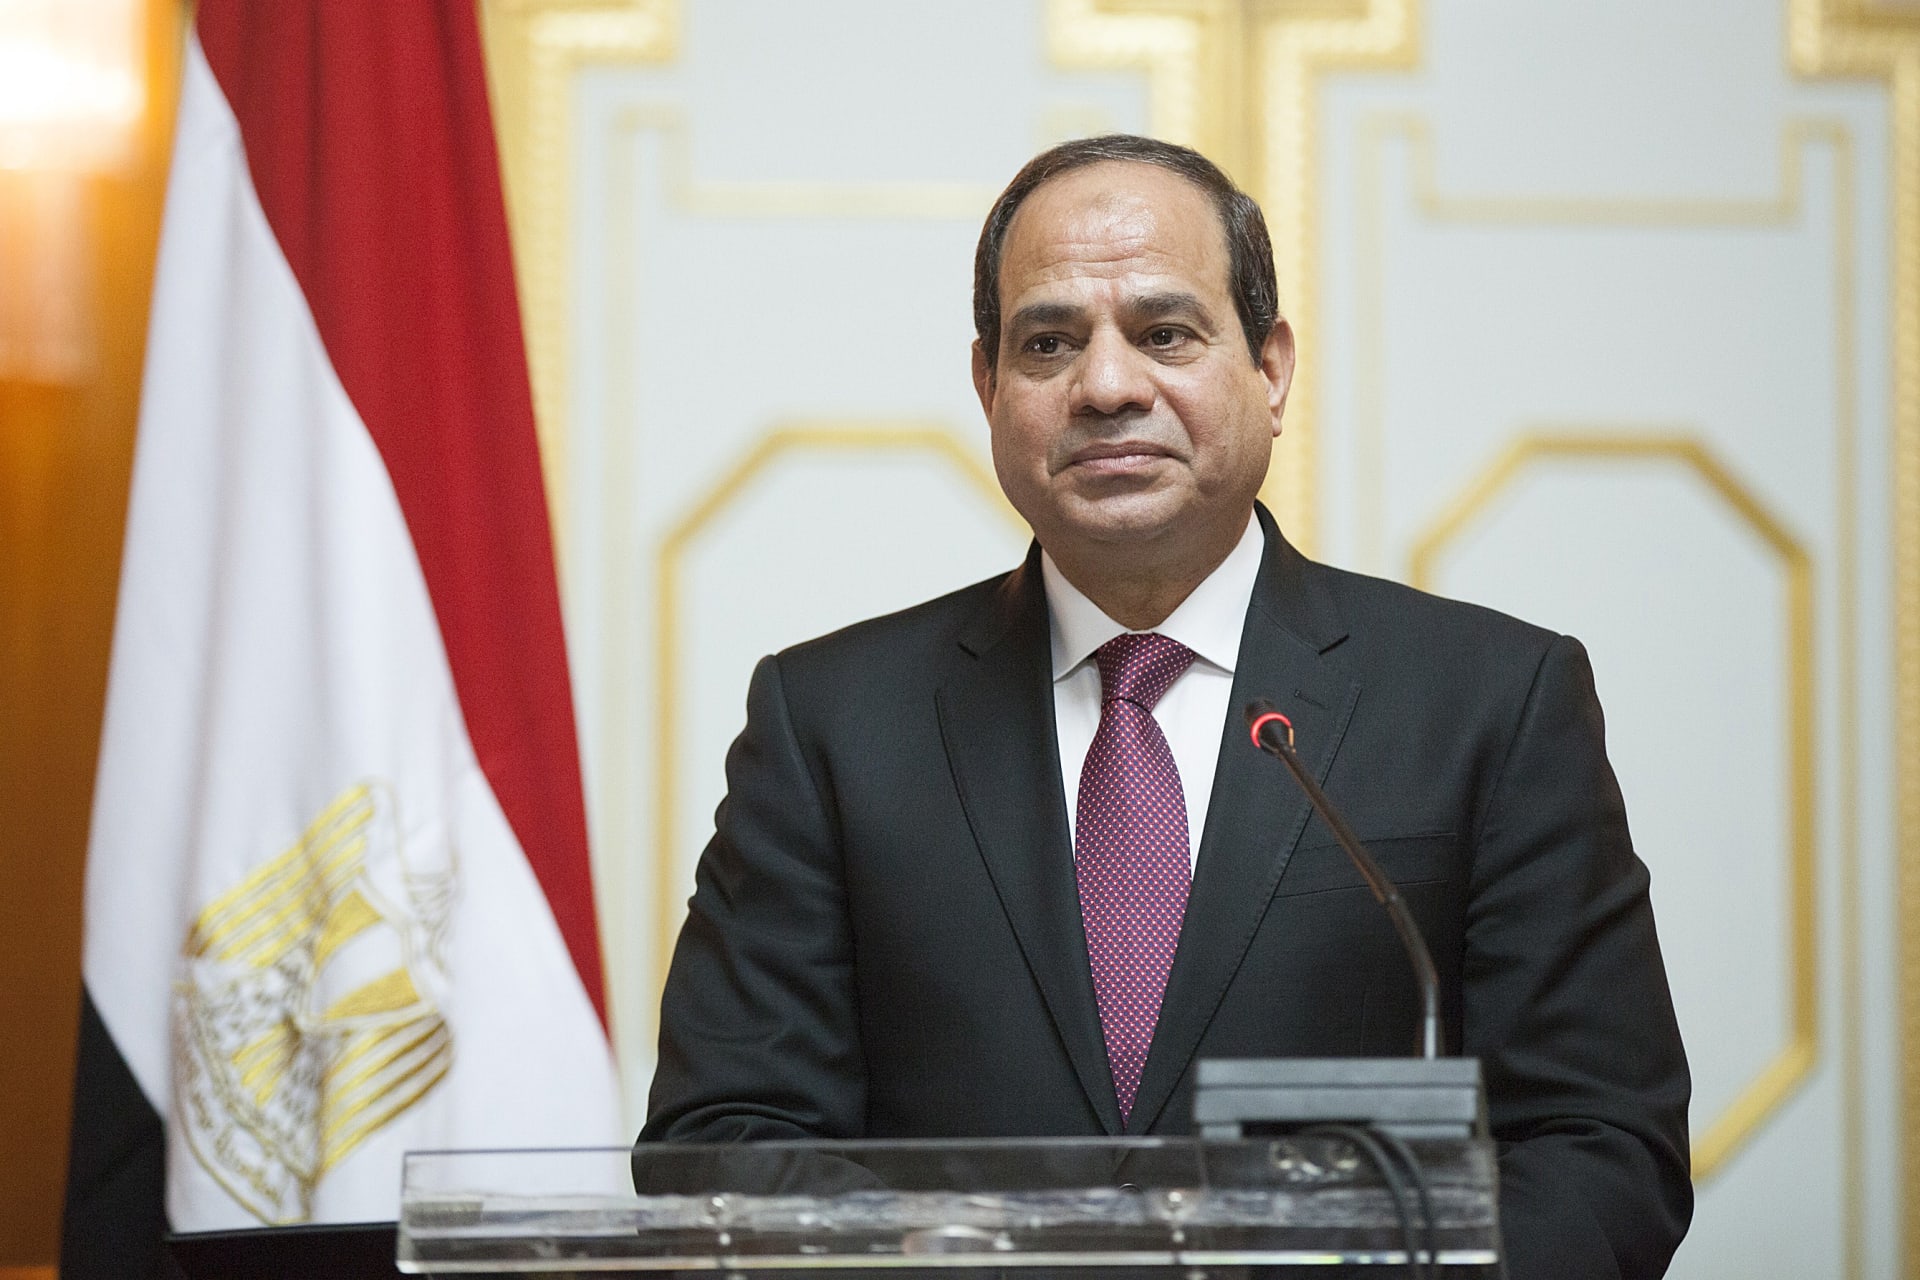 السيسي يتحدث مجددا عن سبب انقطاع الكهرباء في مصر: "ربنا ساترها علينا"